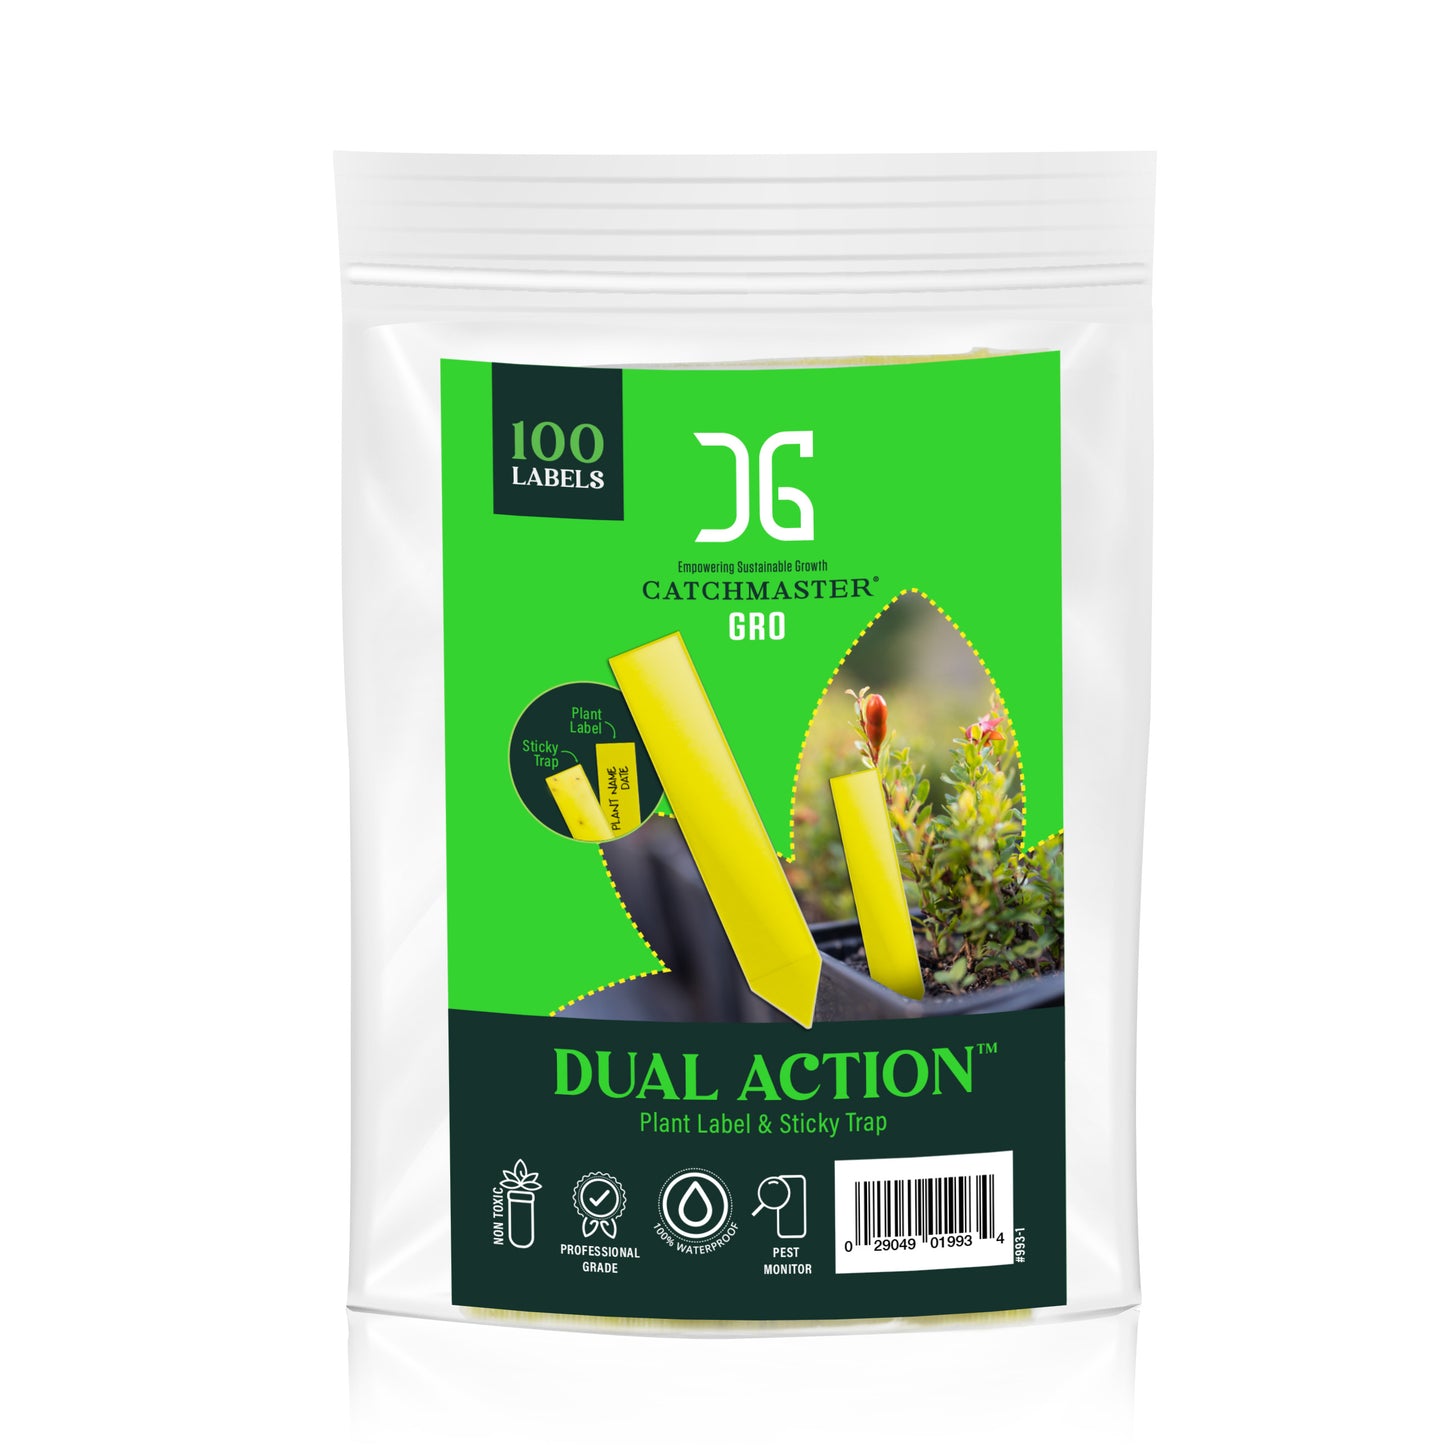 Dual Action Plant Label